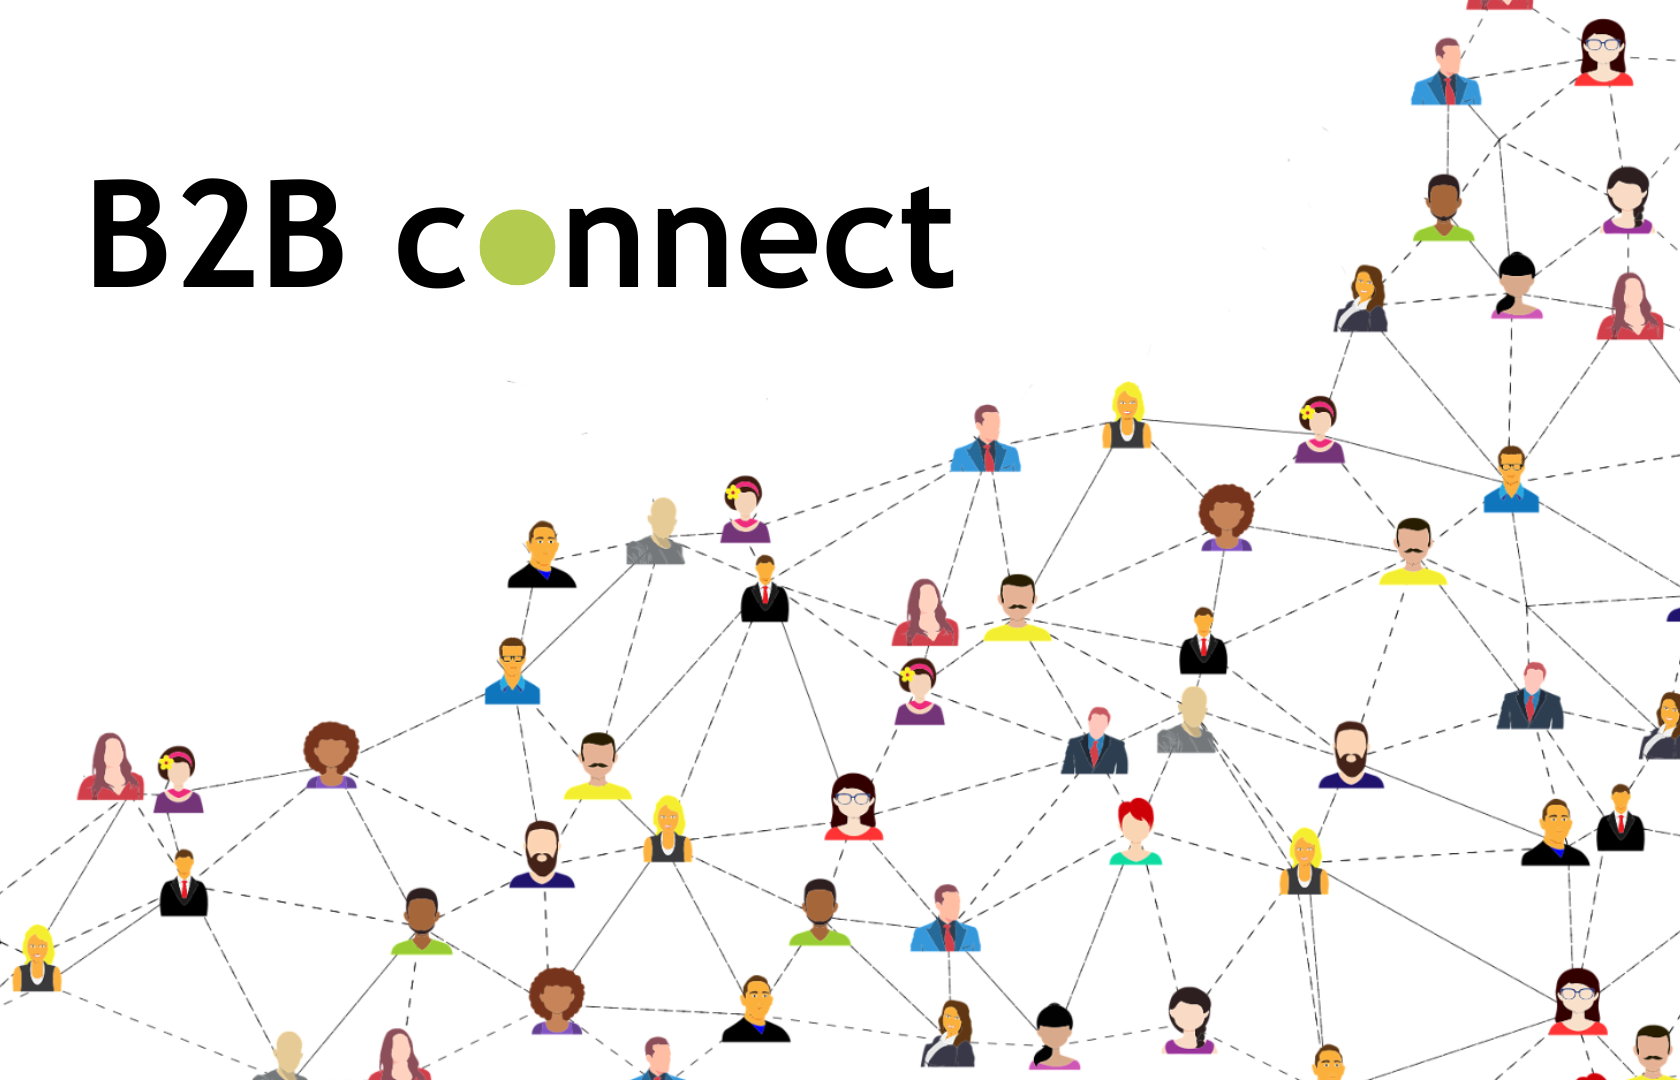 (FULLTEGNET) B2B connect